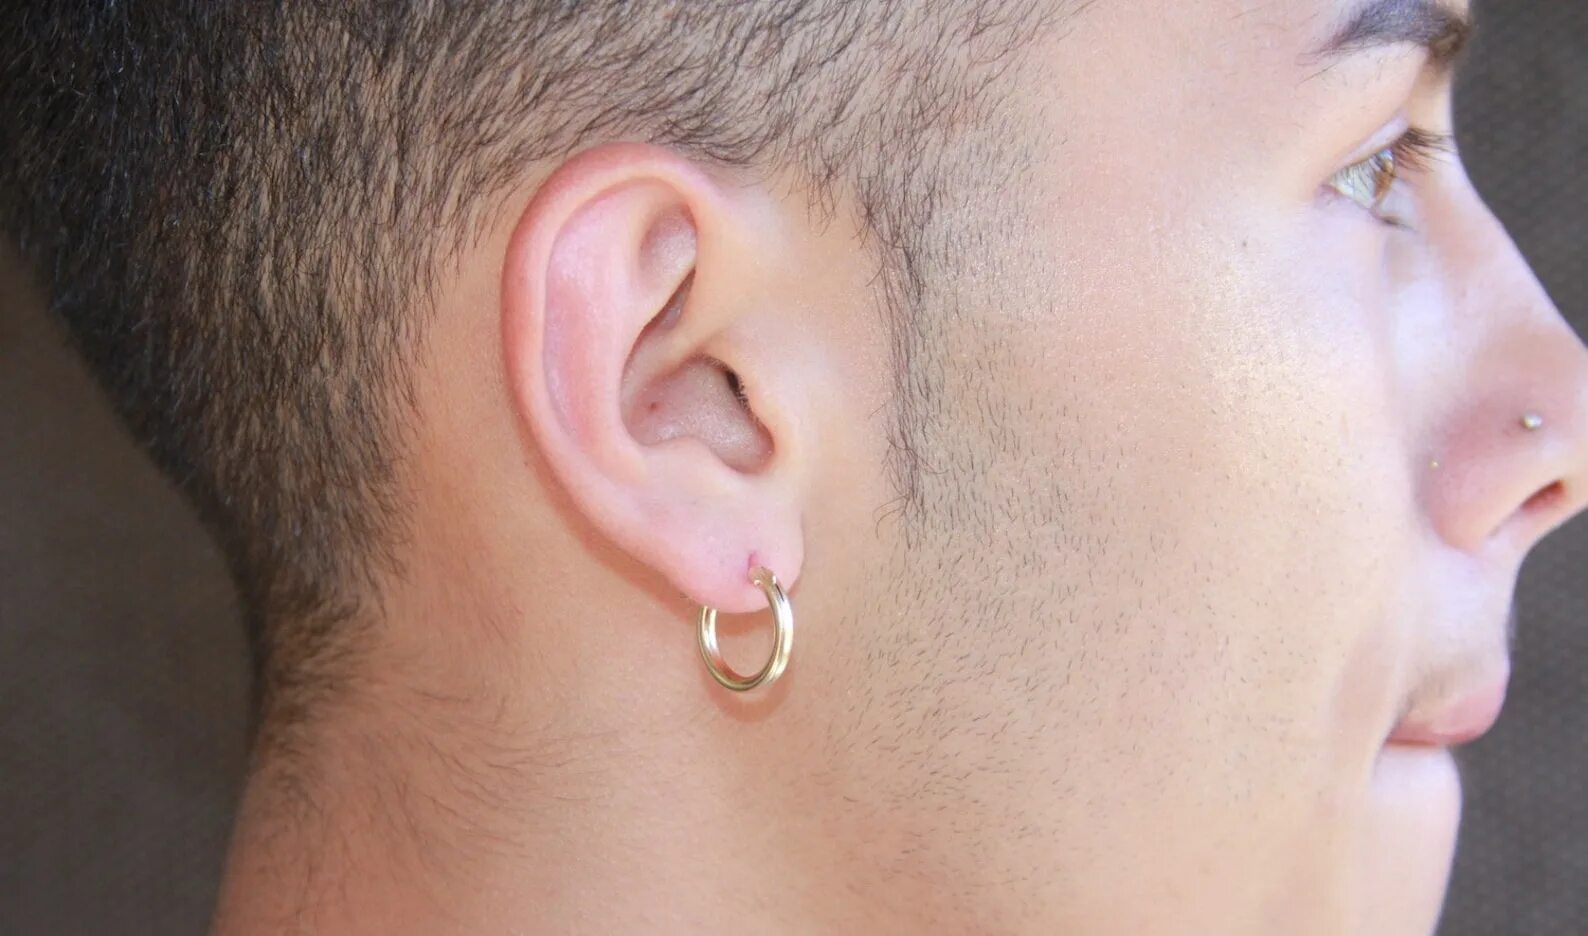 Мужское ухо. Золотая серьга мужская. Мужские серьги кольца. Золотые серьги для мужчины в ухо. Серьги кольца на ухе.